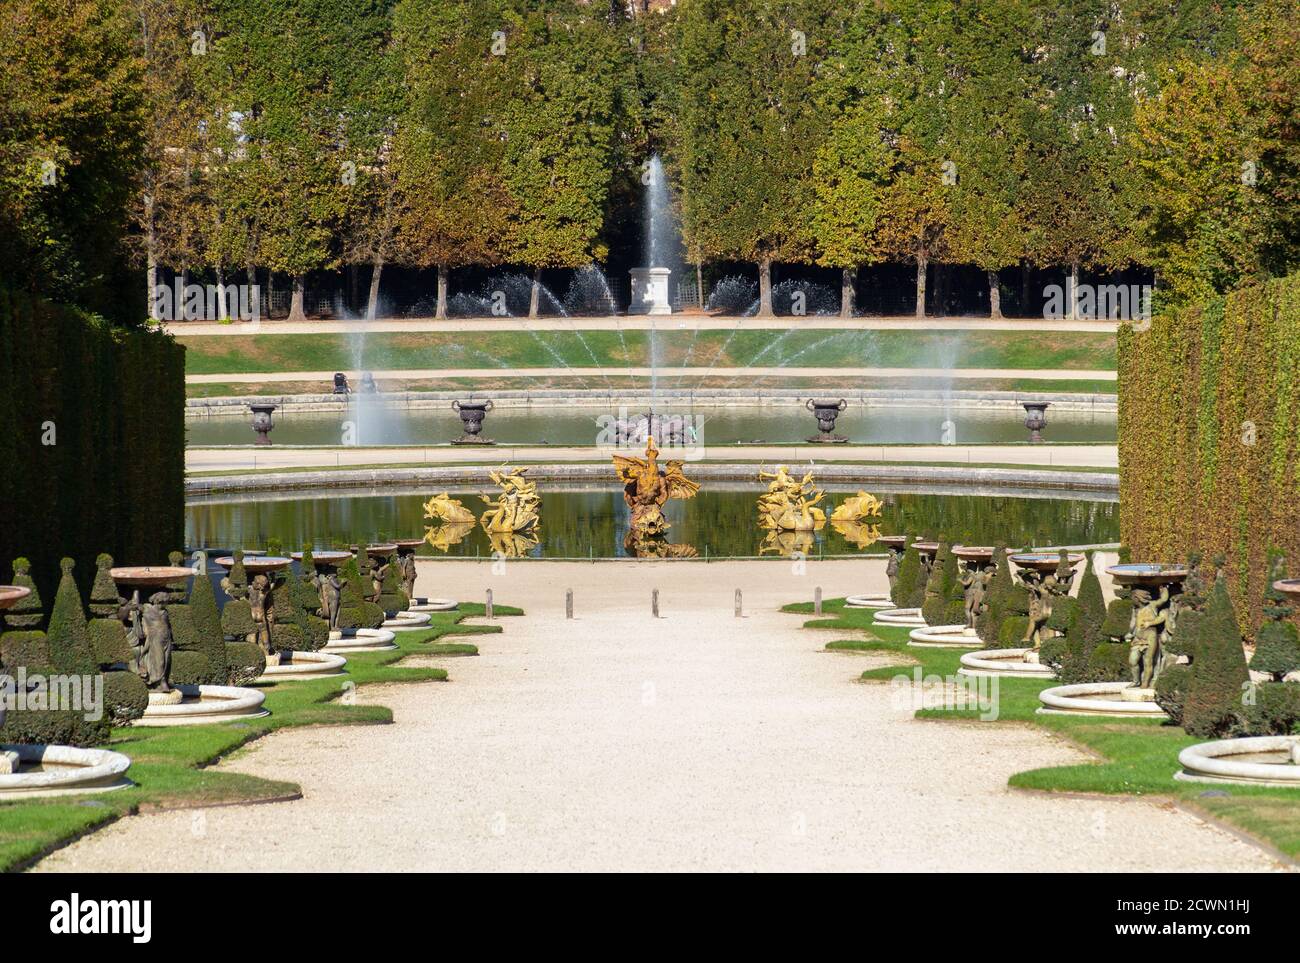 Marmousets Spaziergang mit Drachen- und Neptunbrunnen in den Gärten von Versailles - Frankreich Stockfoto